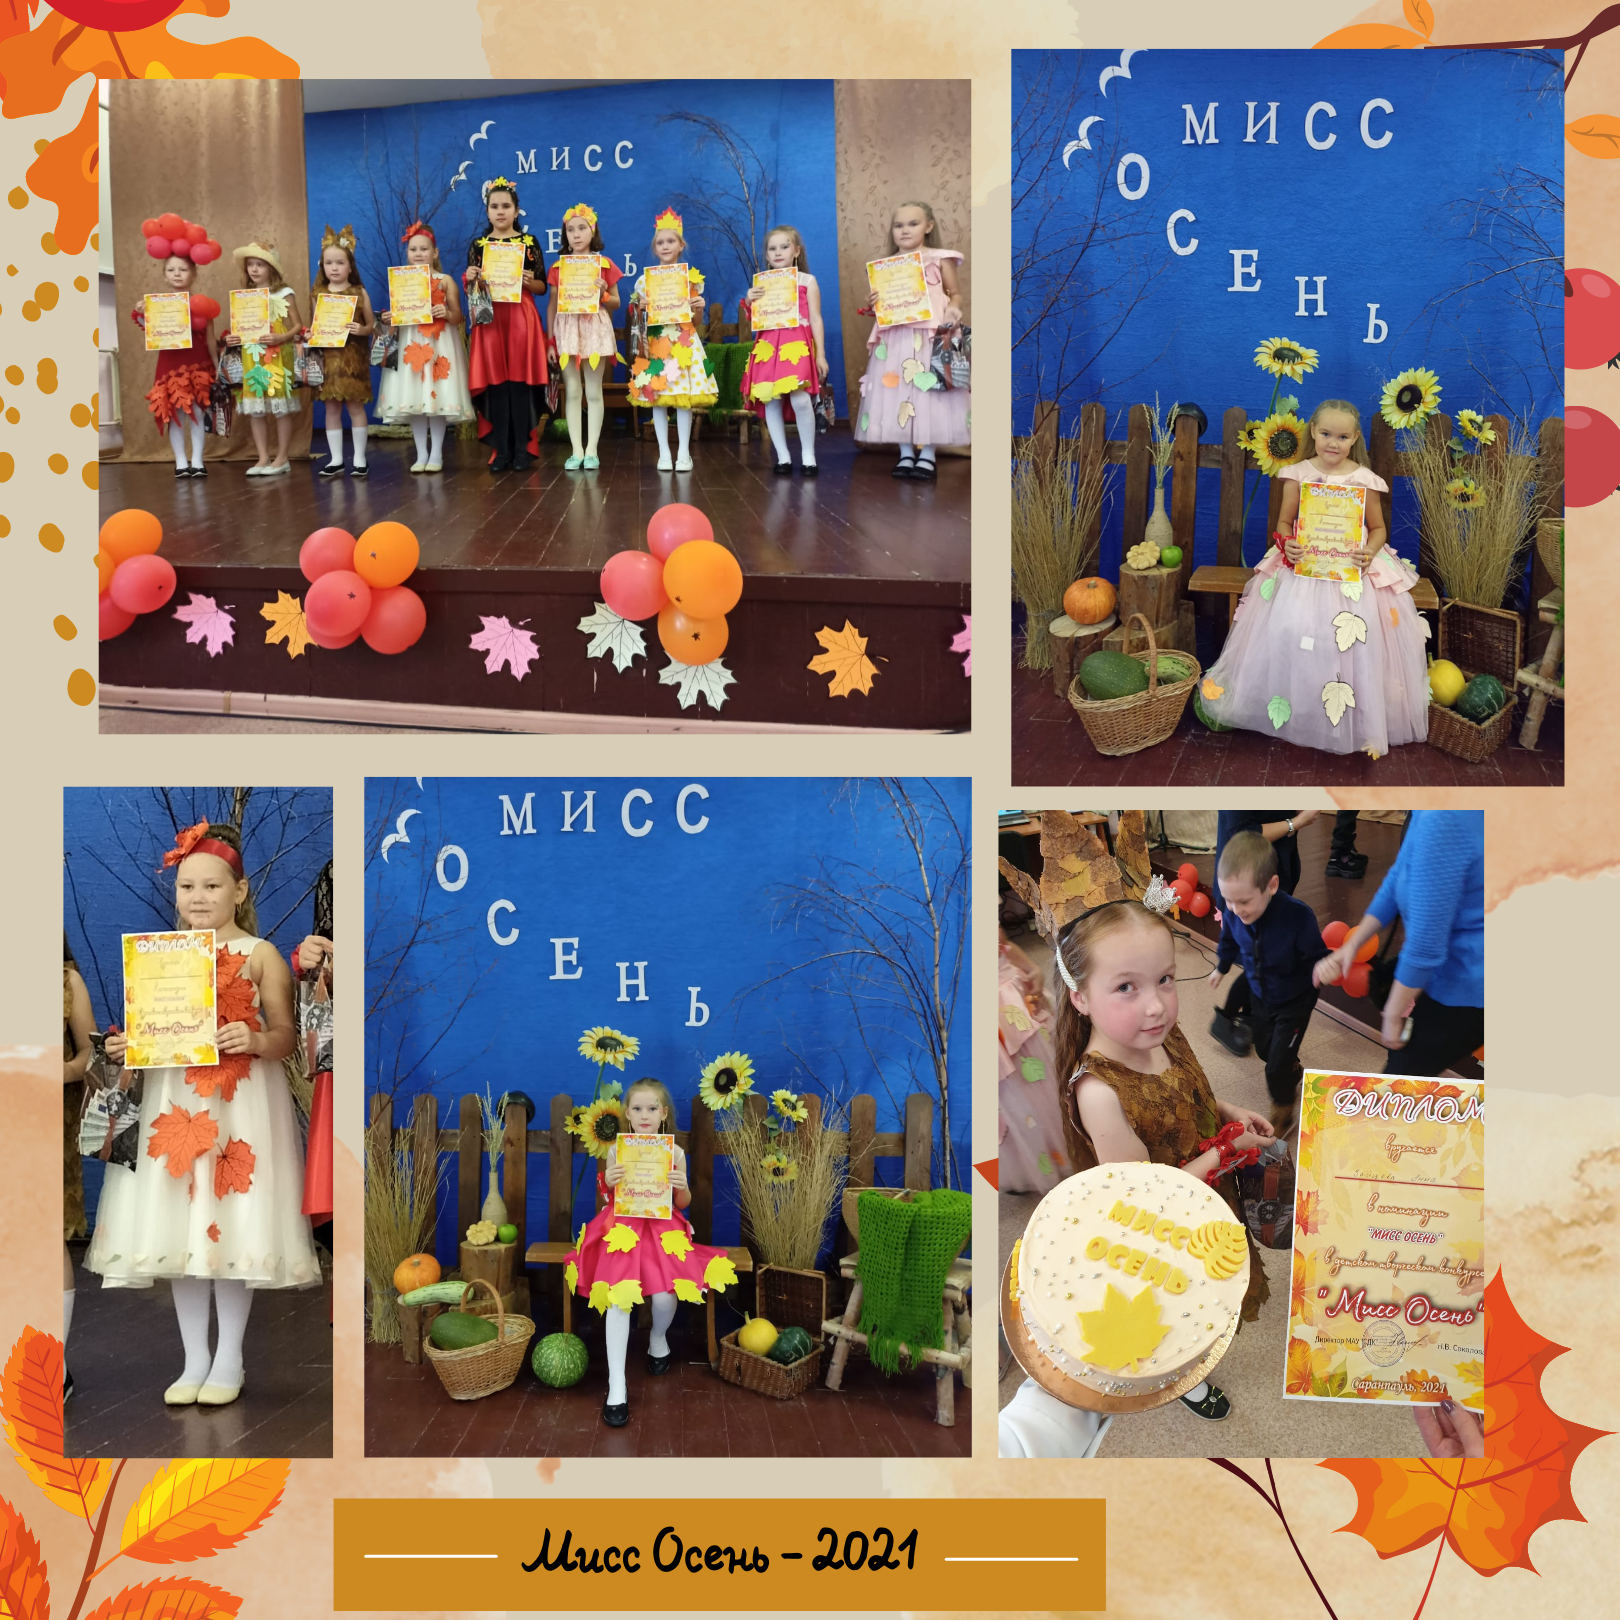 Детский творческий конкурс на звание «Мисс Осень - 2021» среди девочек 7-10 лет.